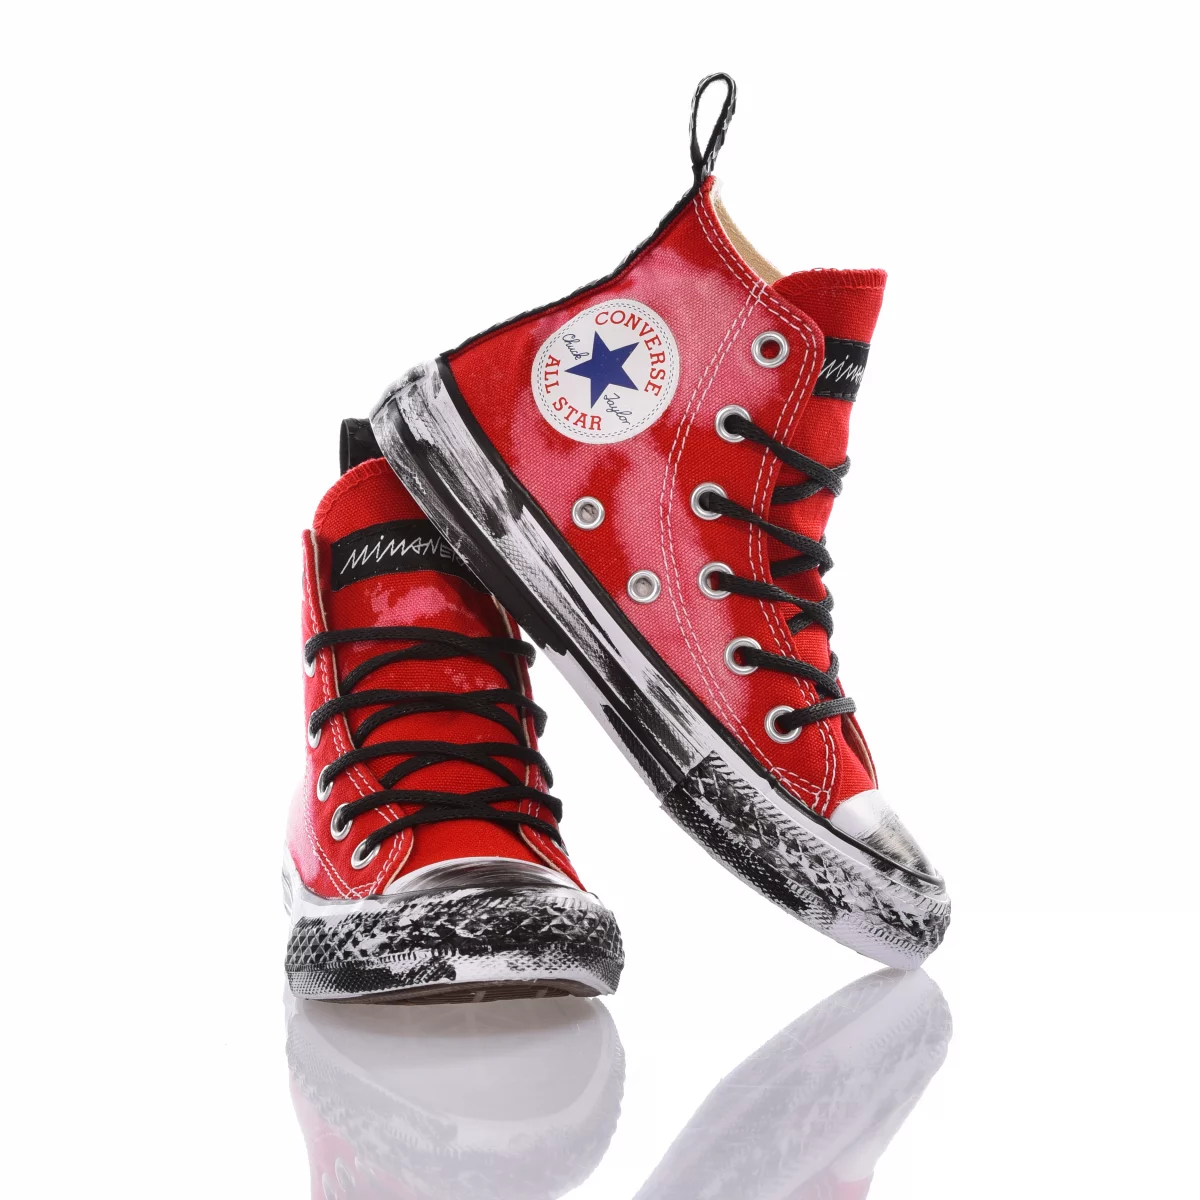 Converse Junior Bleached Red scarpe personalizzate bambino mimanera